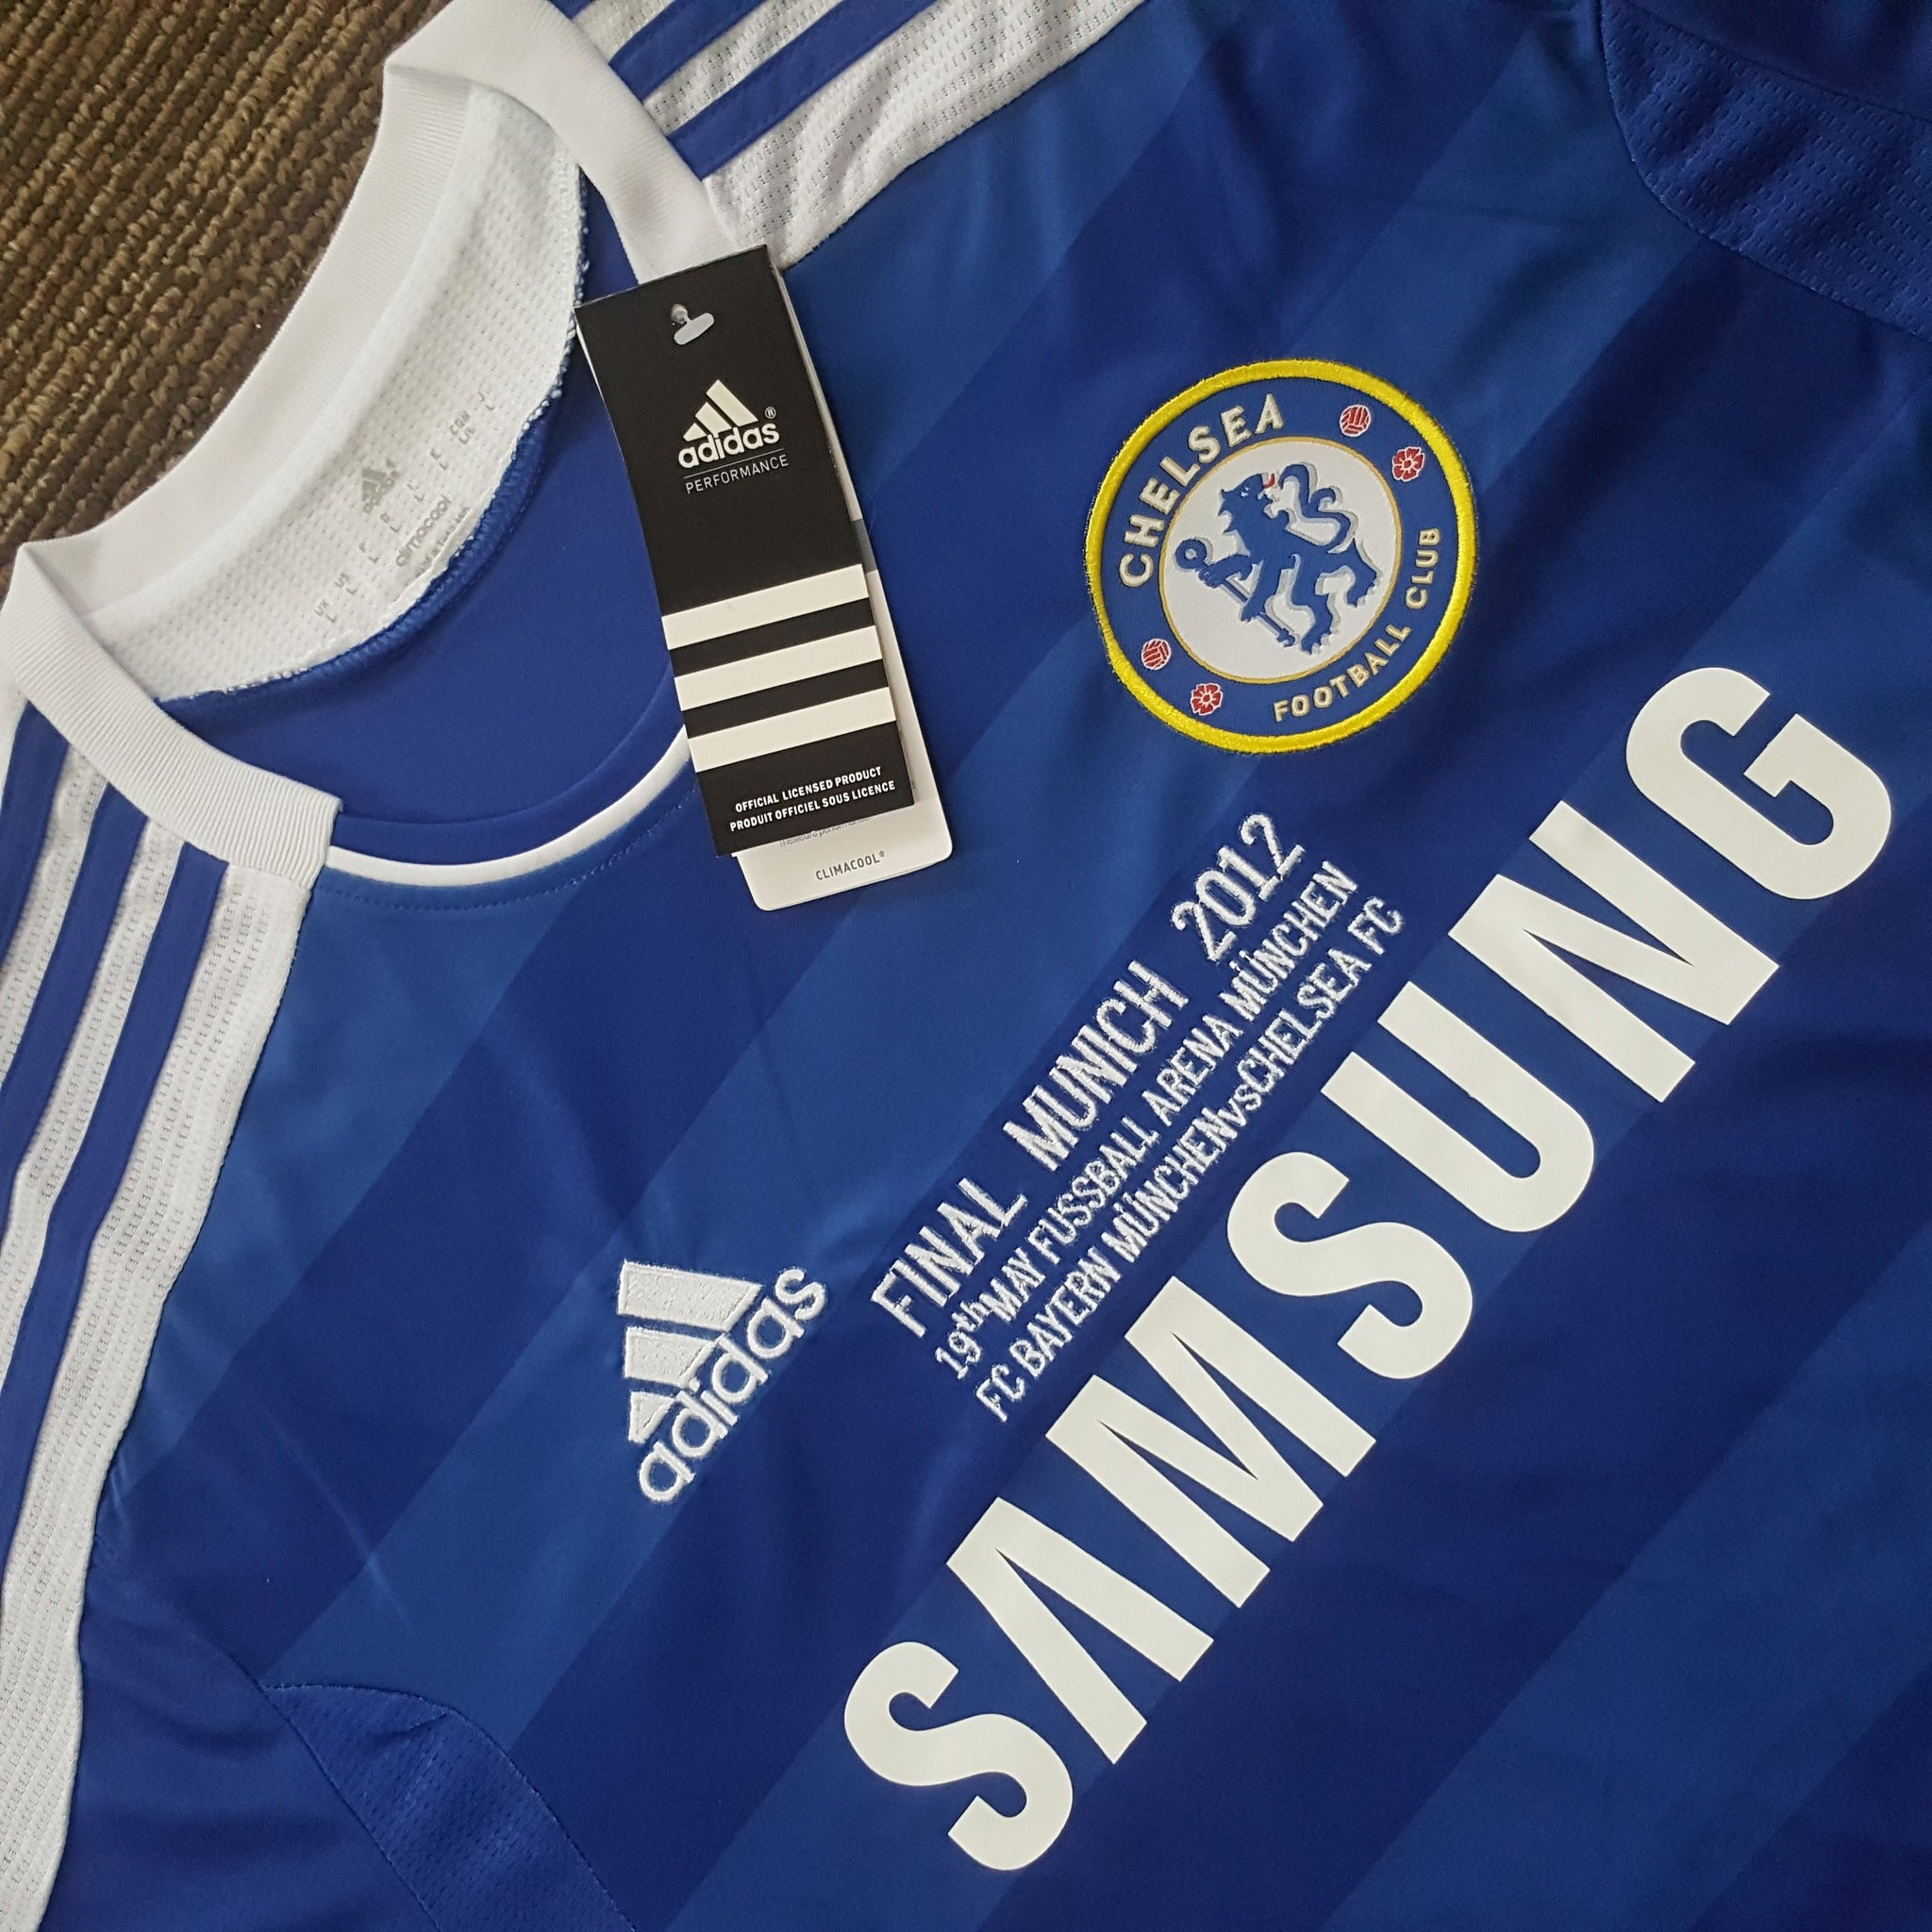 Chelsea fc 2012 kit